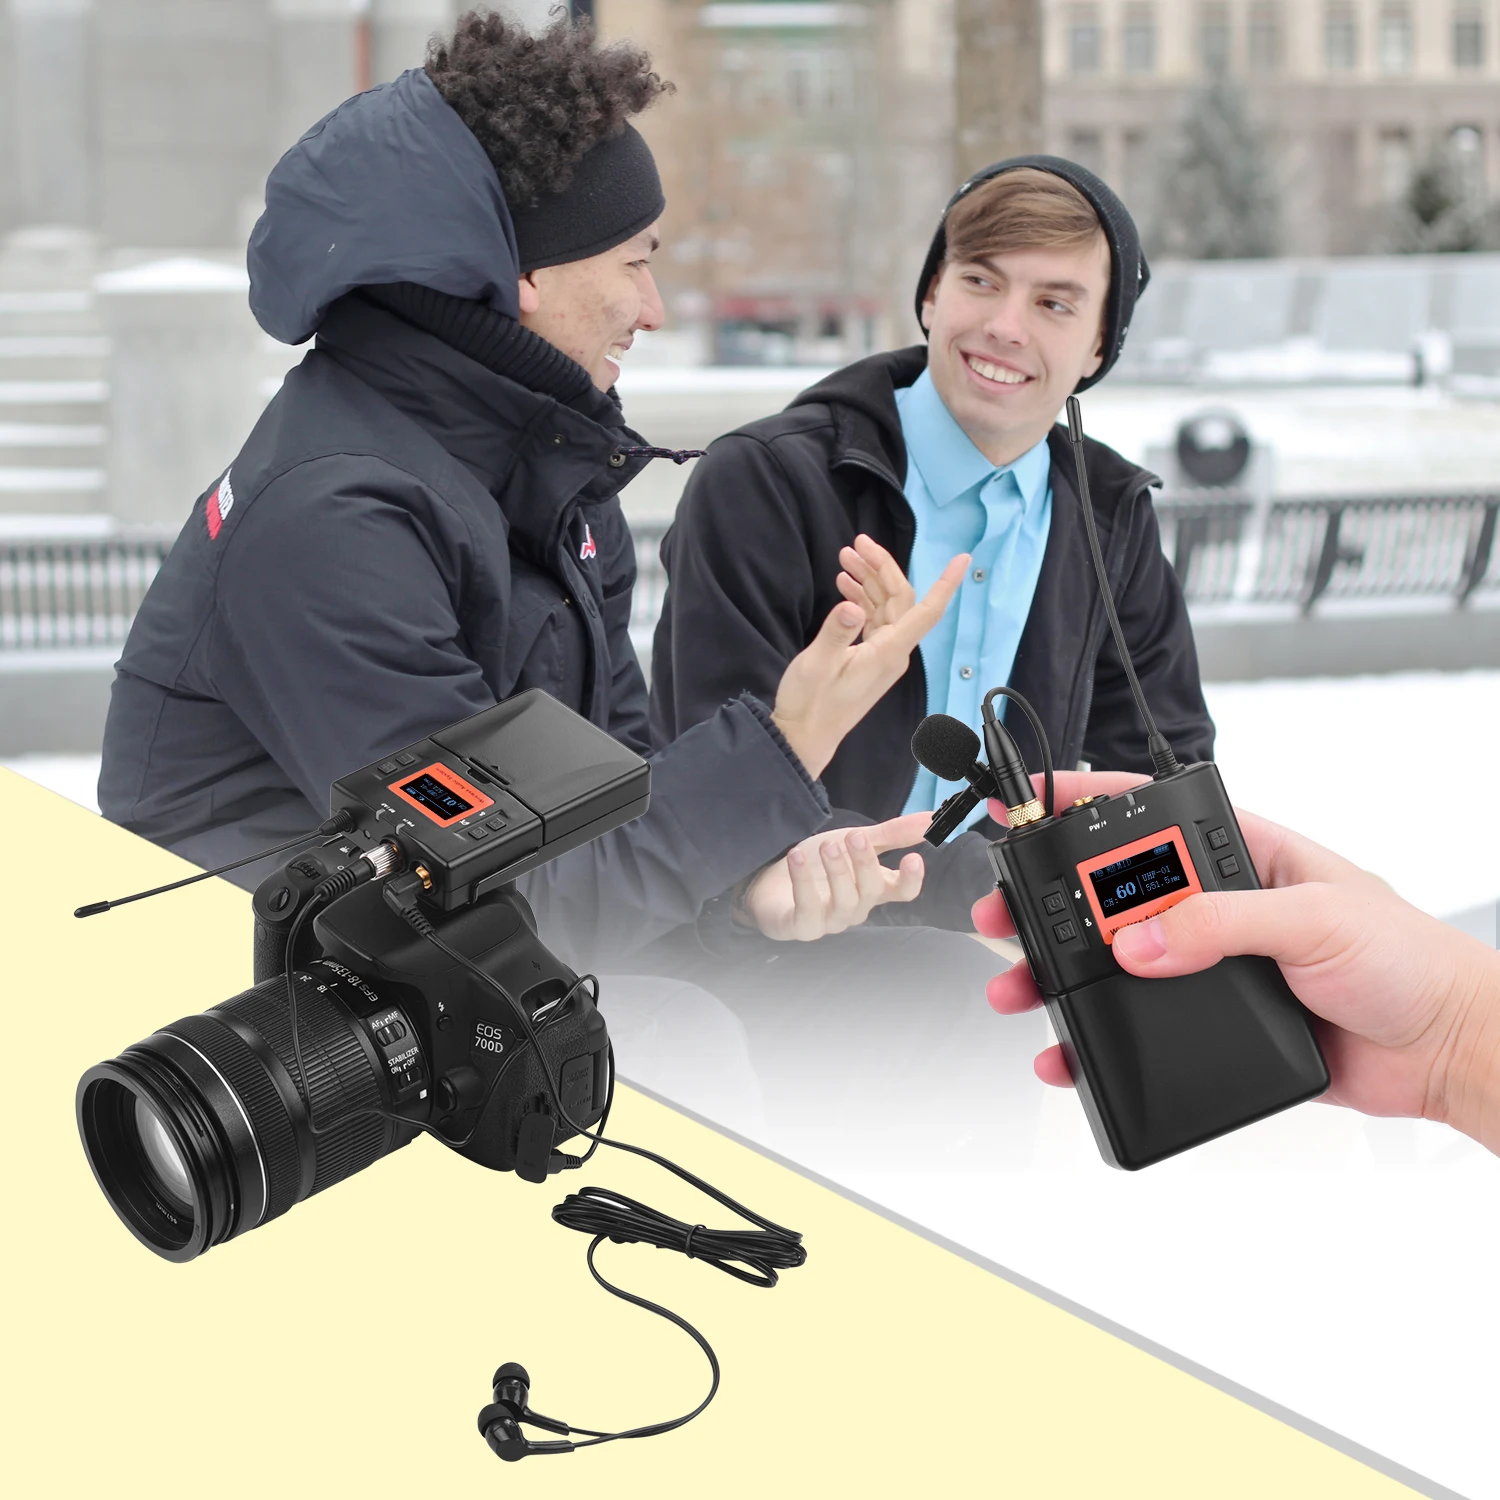 

Профессиональные беспроводные микрофоны ручной микрофон для DSLR камеры видеокамеры смартфона ПК планшета интервью Запись микрофон